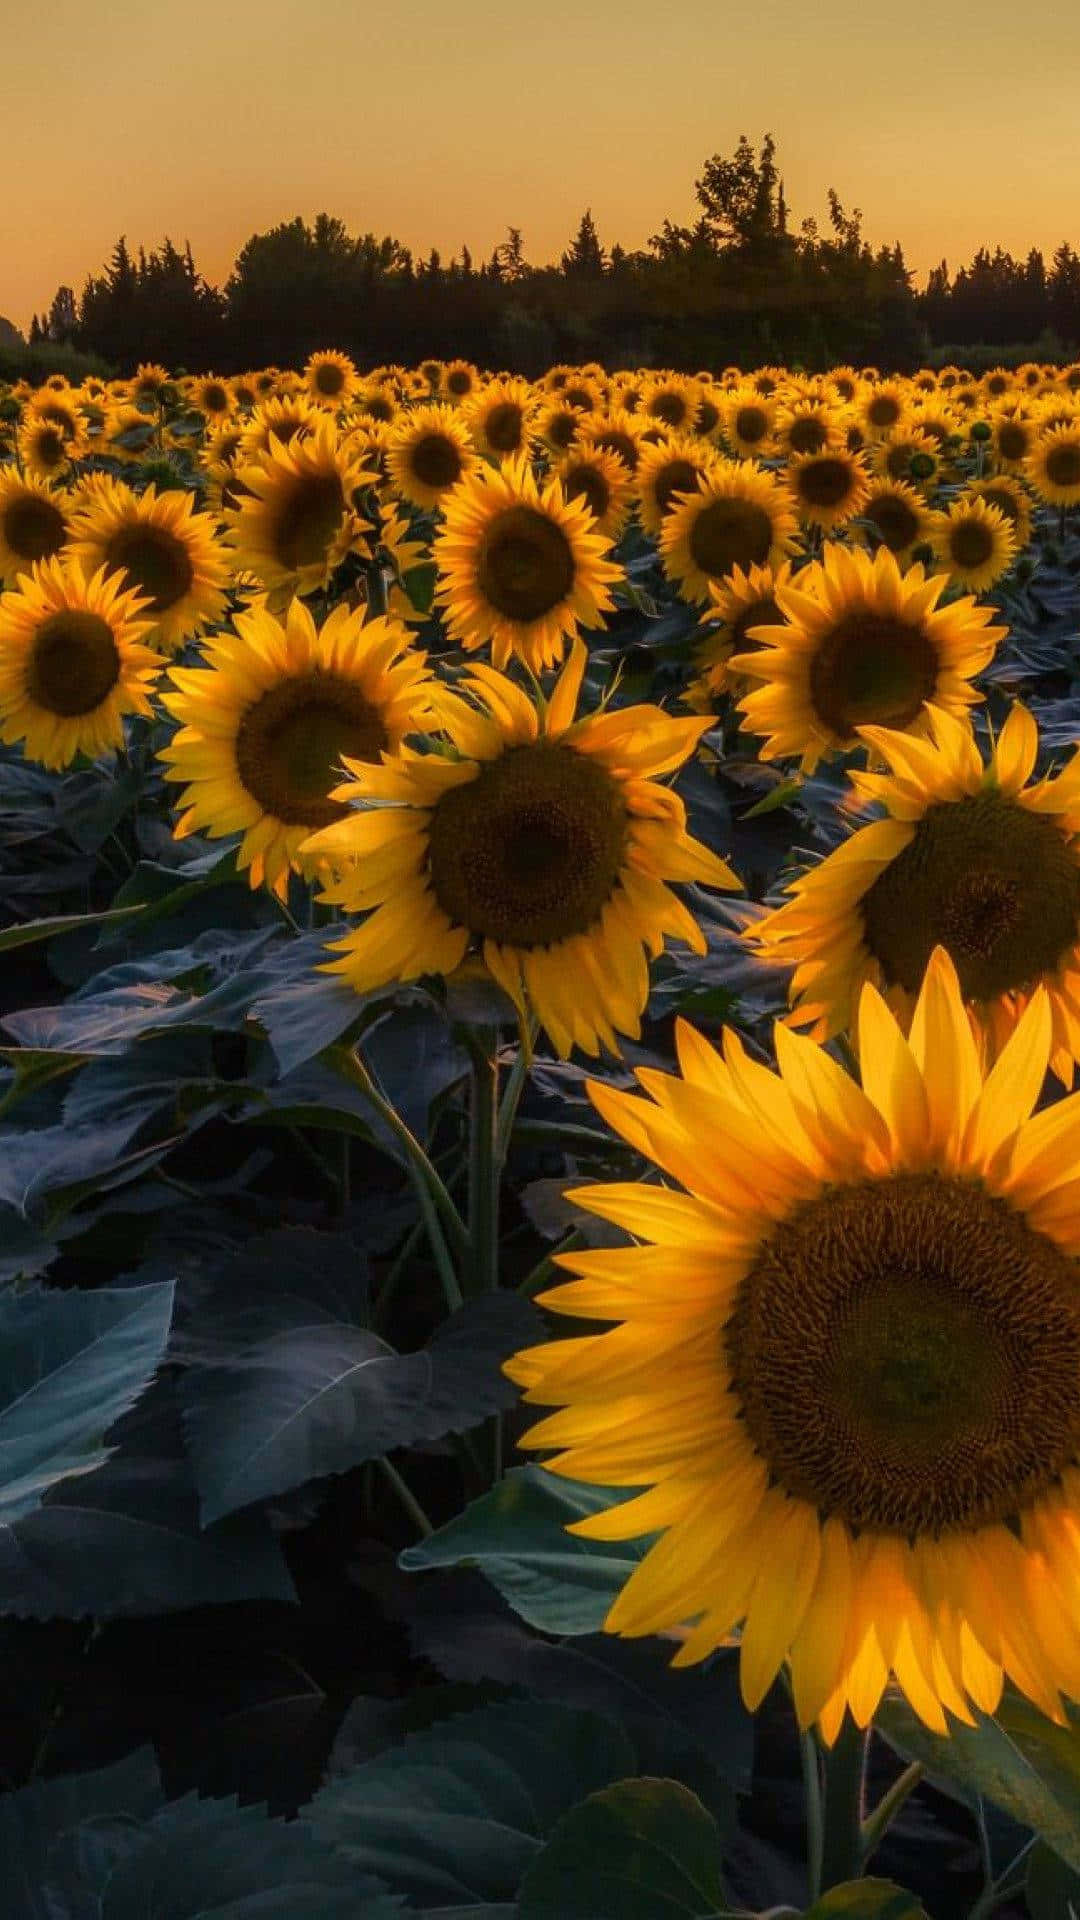 Holensie Sich Mit Diesem Wunderschönen Sonnenblumenhintergrund Den Sonnenschein Auf Ihr Iphone. Wallpaper